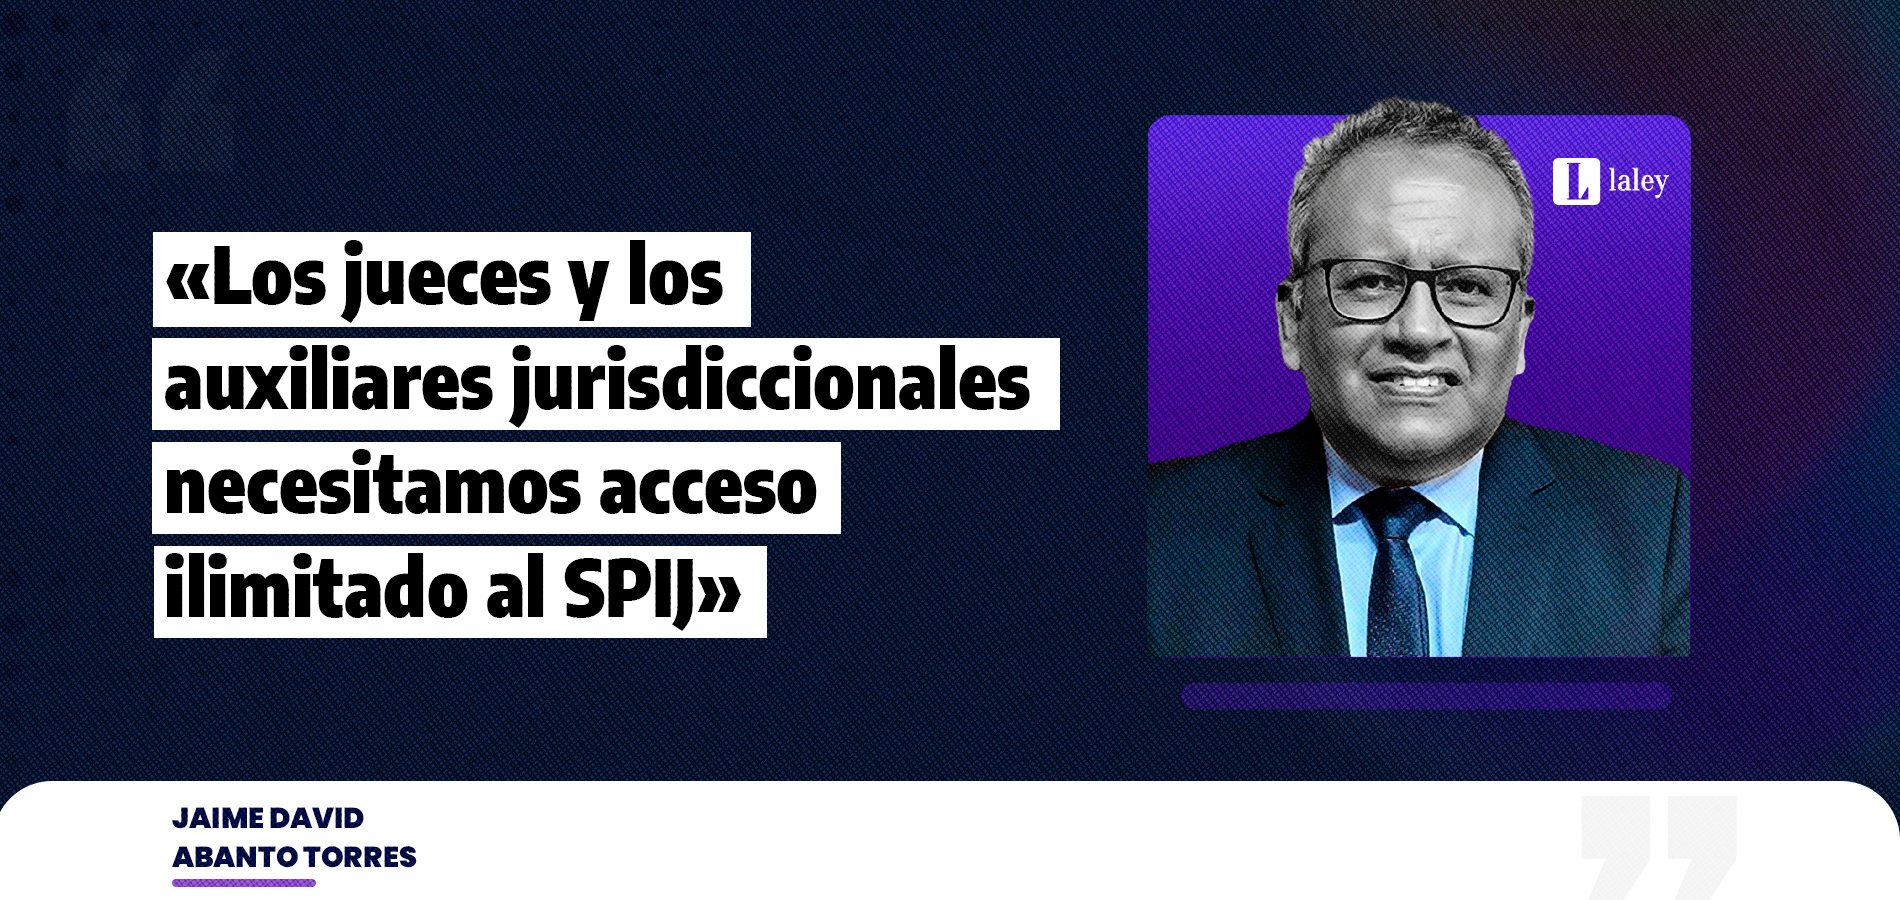 «Los jueces y los auxiliares jurisdiccionales necesitamos acceso ilimitado al SPIJ»